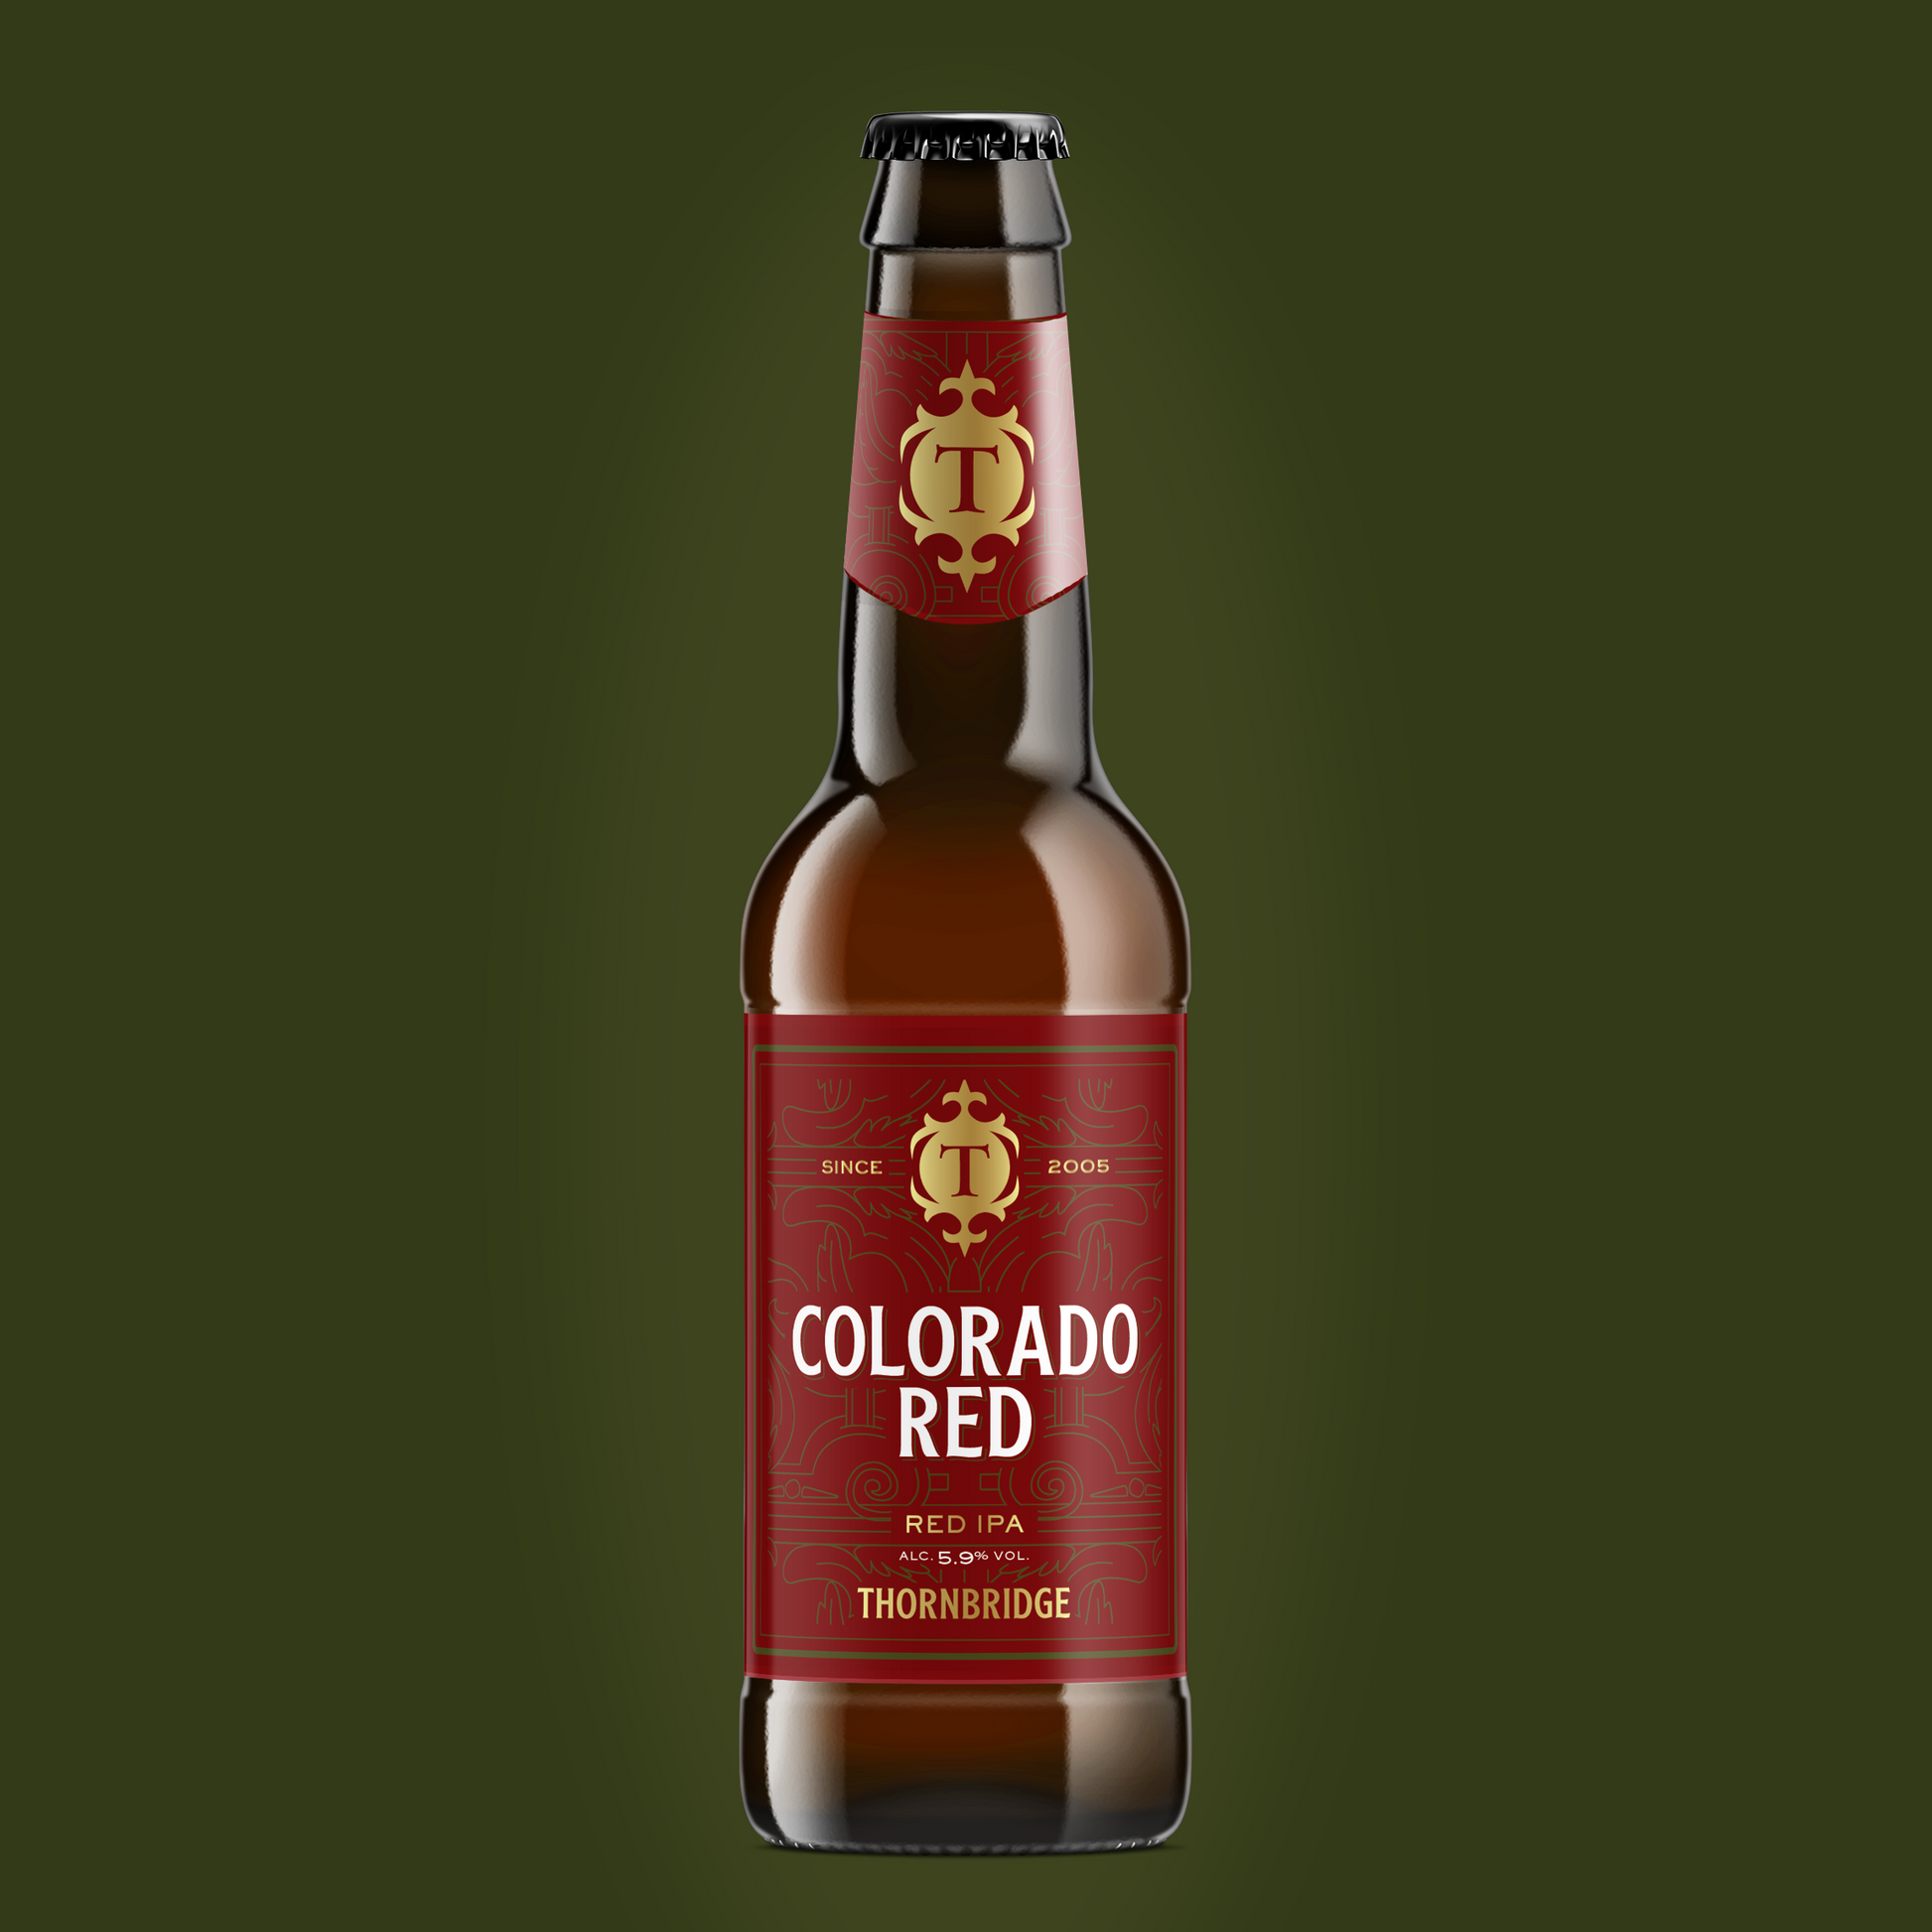 Colorado Red ,5.9% Red IPA  Thornbridge